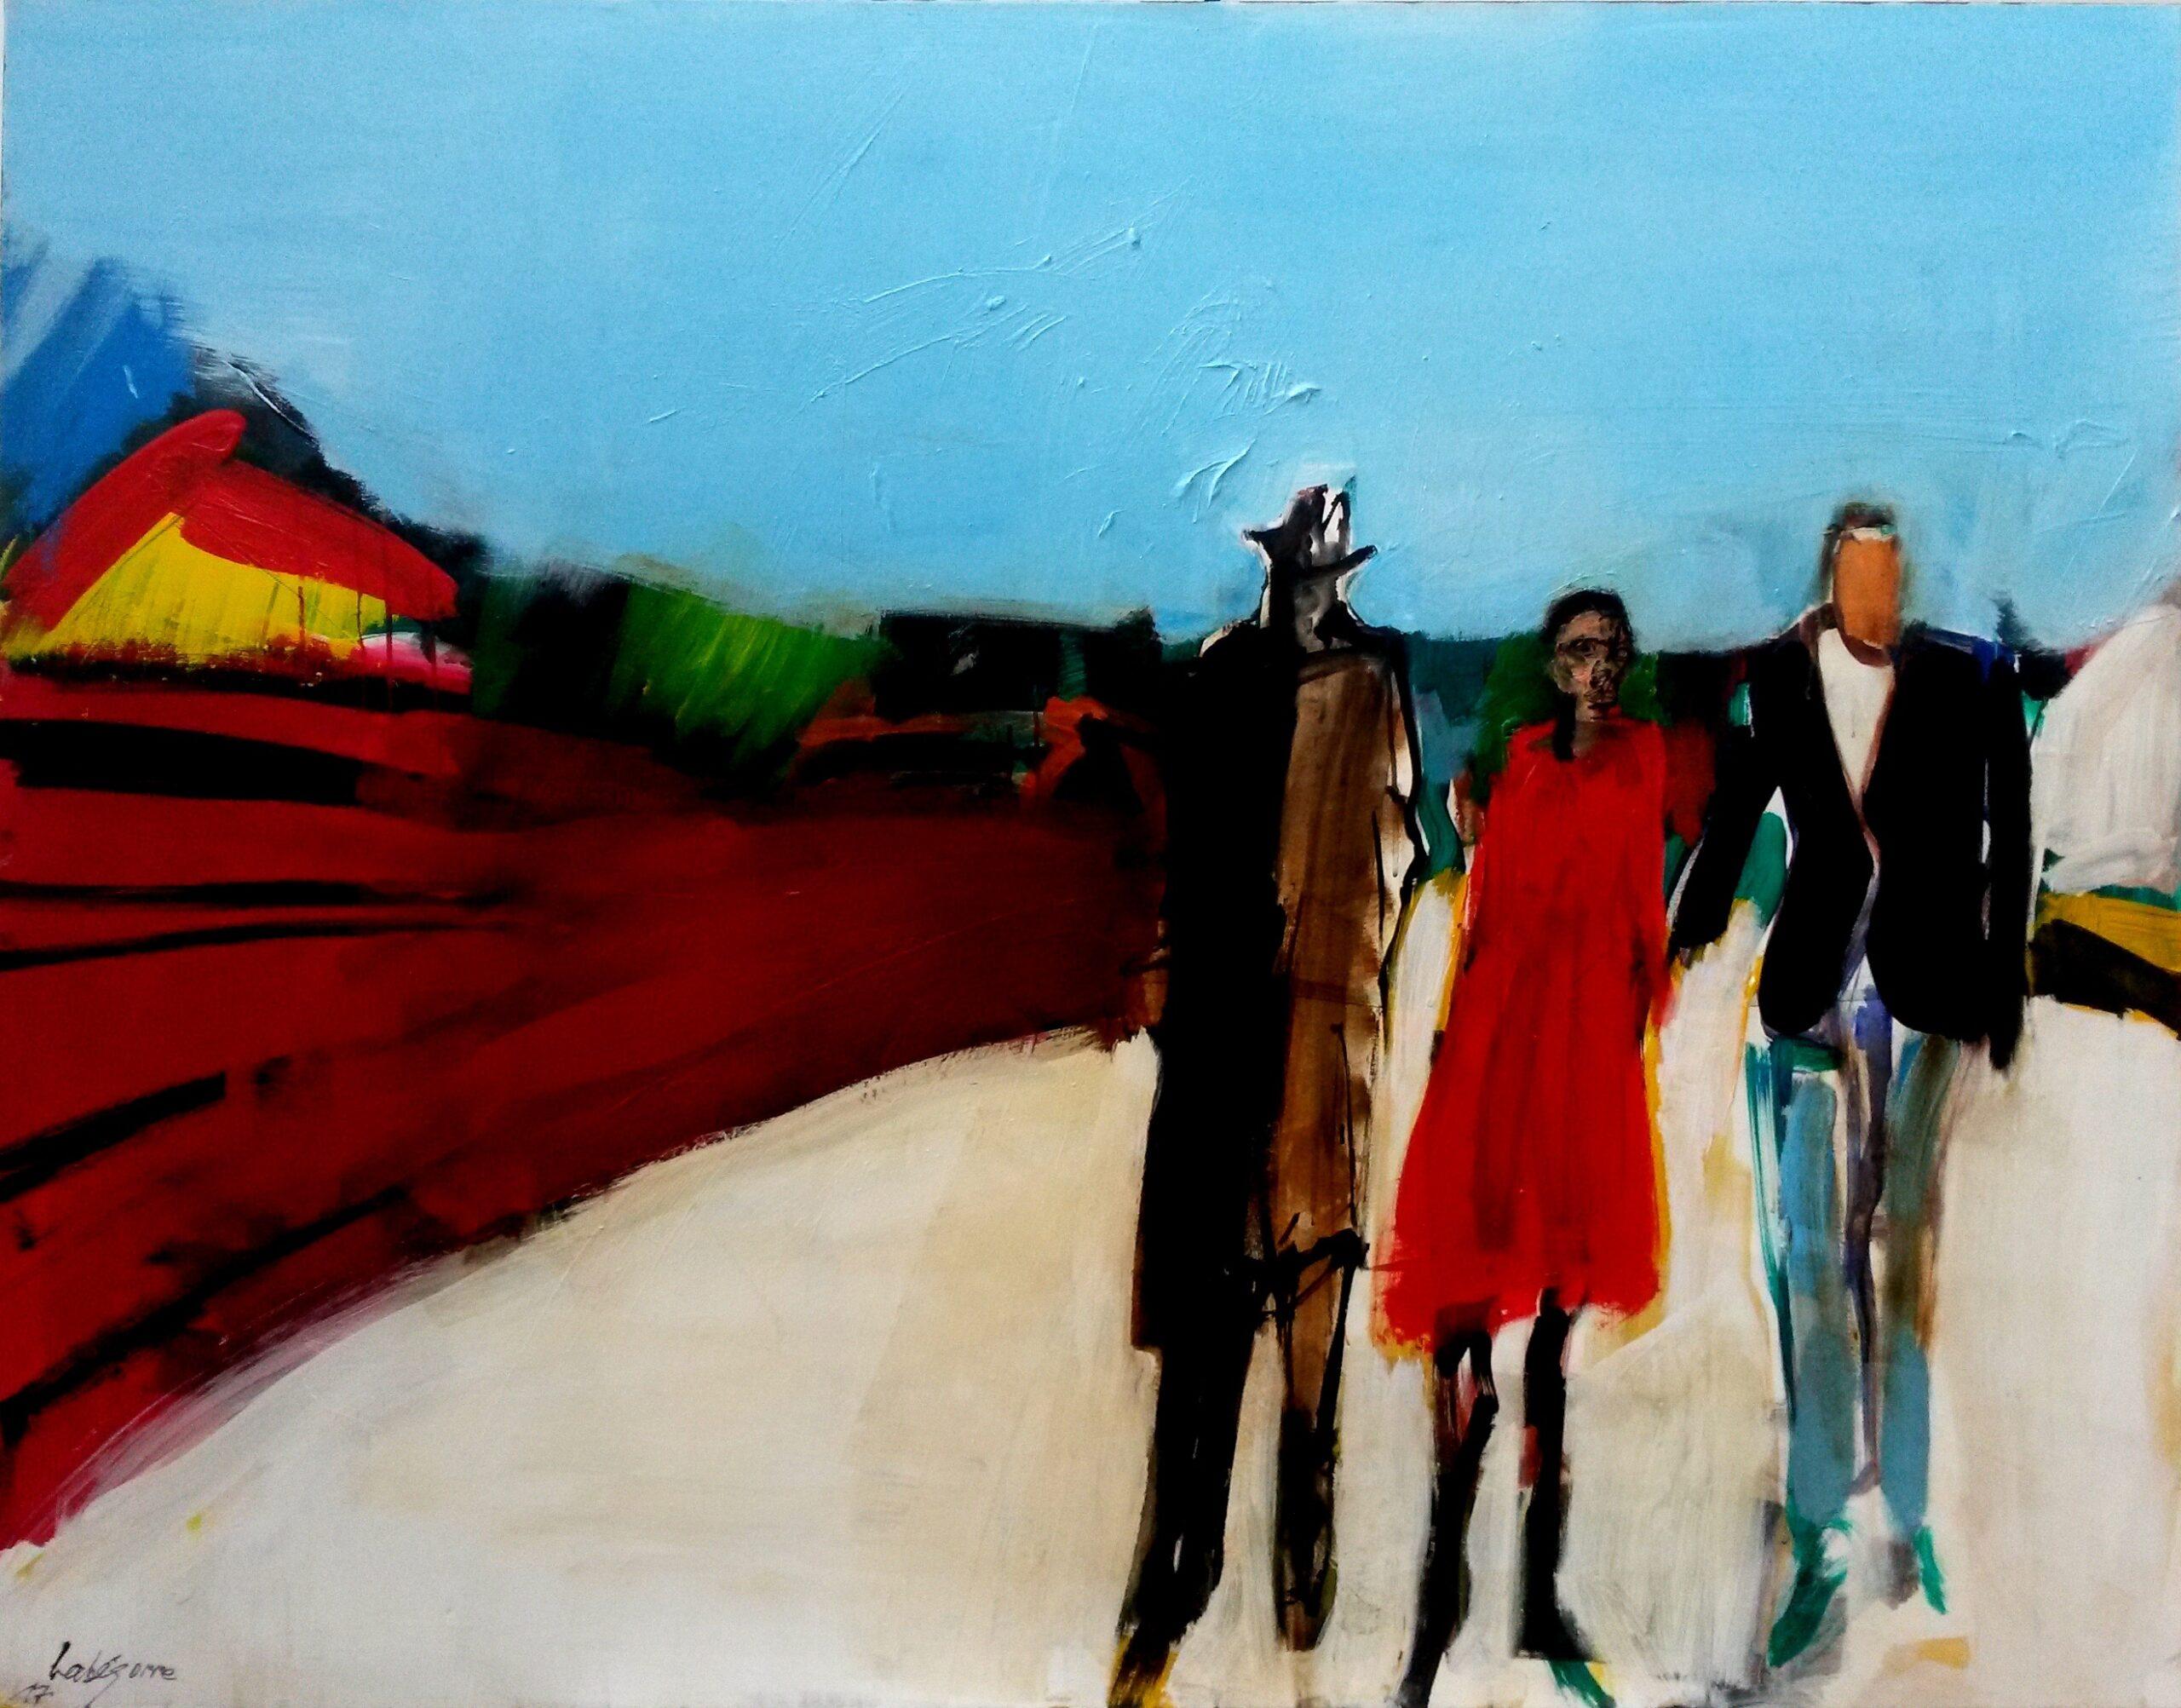 La promenade du dimanche von Serge Labégorre – Painting von Unknown